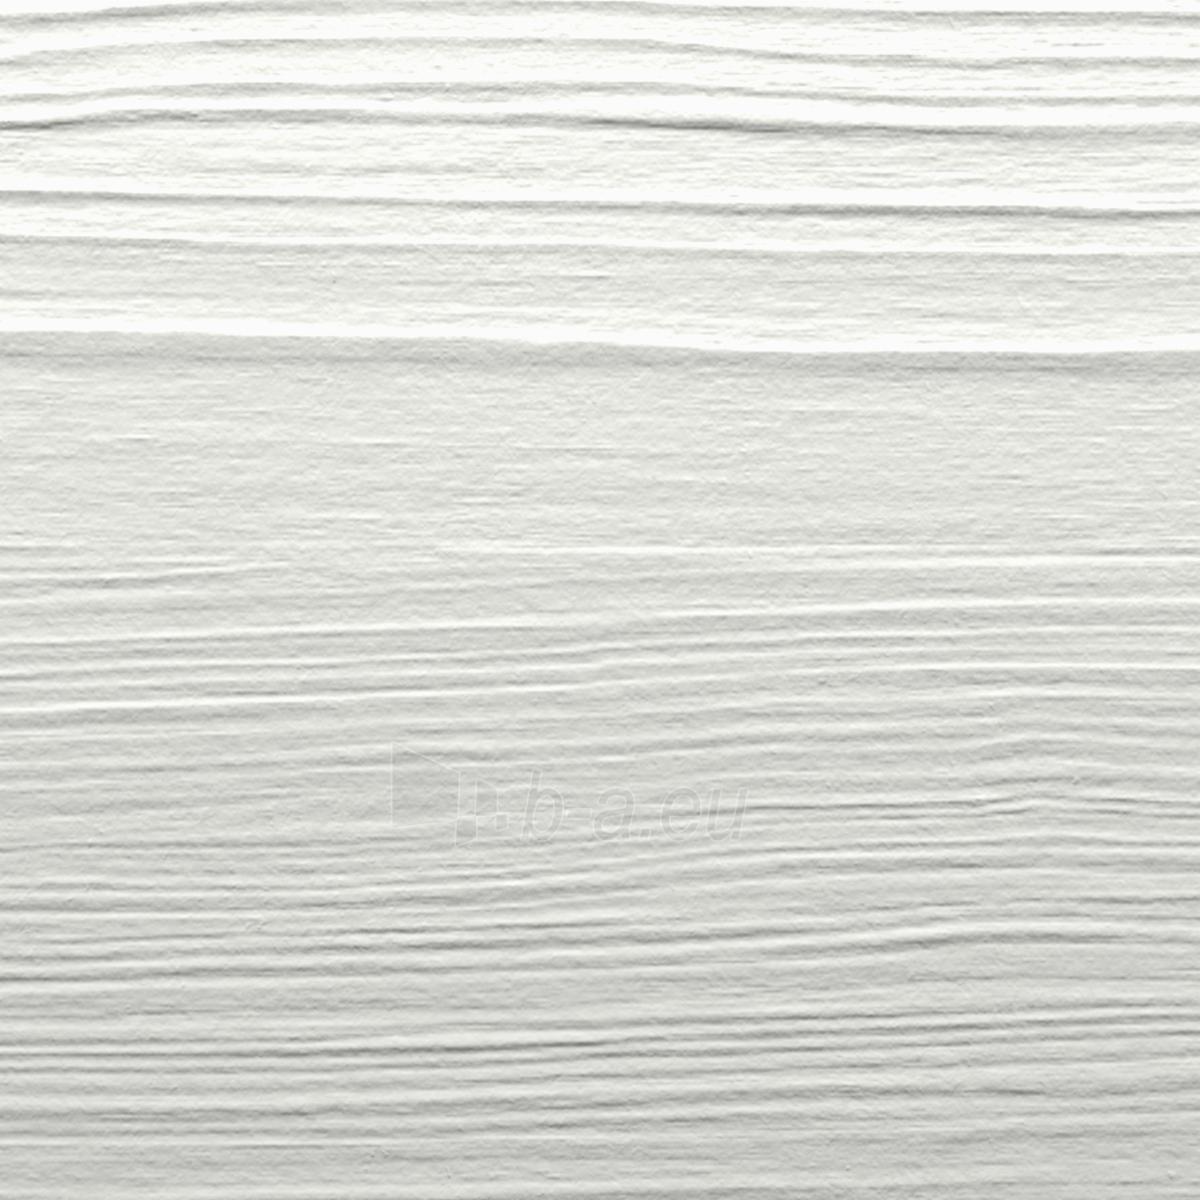 Fibrocementinė dailylentė Hardie® Plank VL Click (Arctic White) medžio imitacija paveikslėlis 3 iš 3